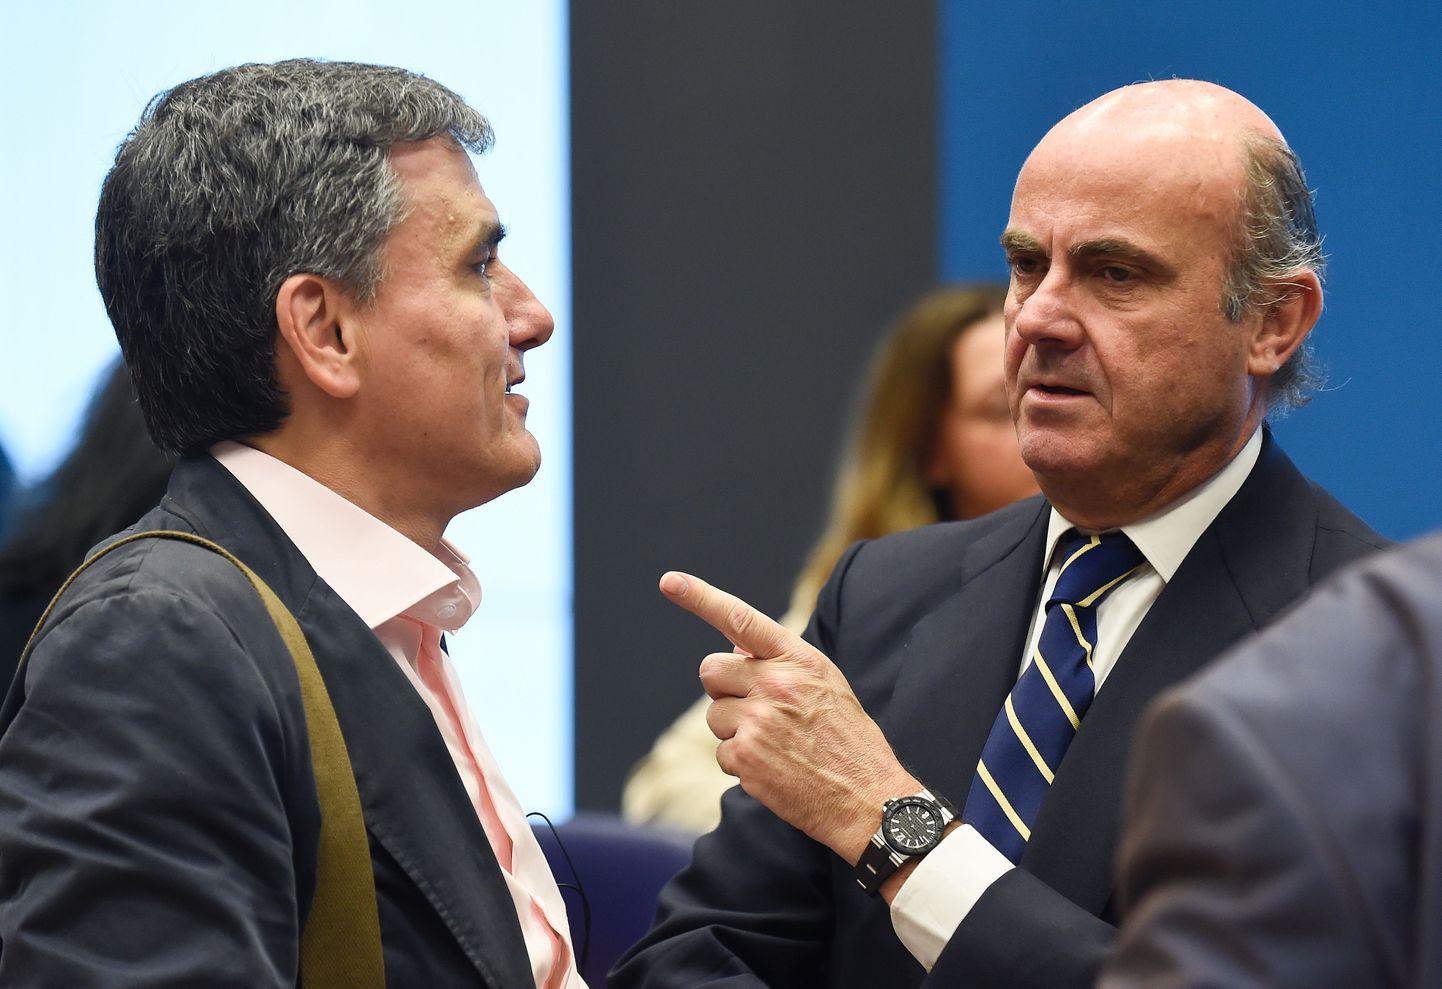 Kreeka rahandusminister Euclid Tsakalotos (vasakult)ja Hispaania majandusminister Luis de Guindos Luxemburgis